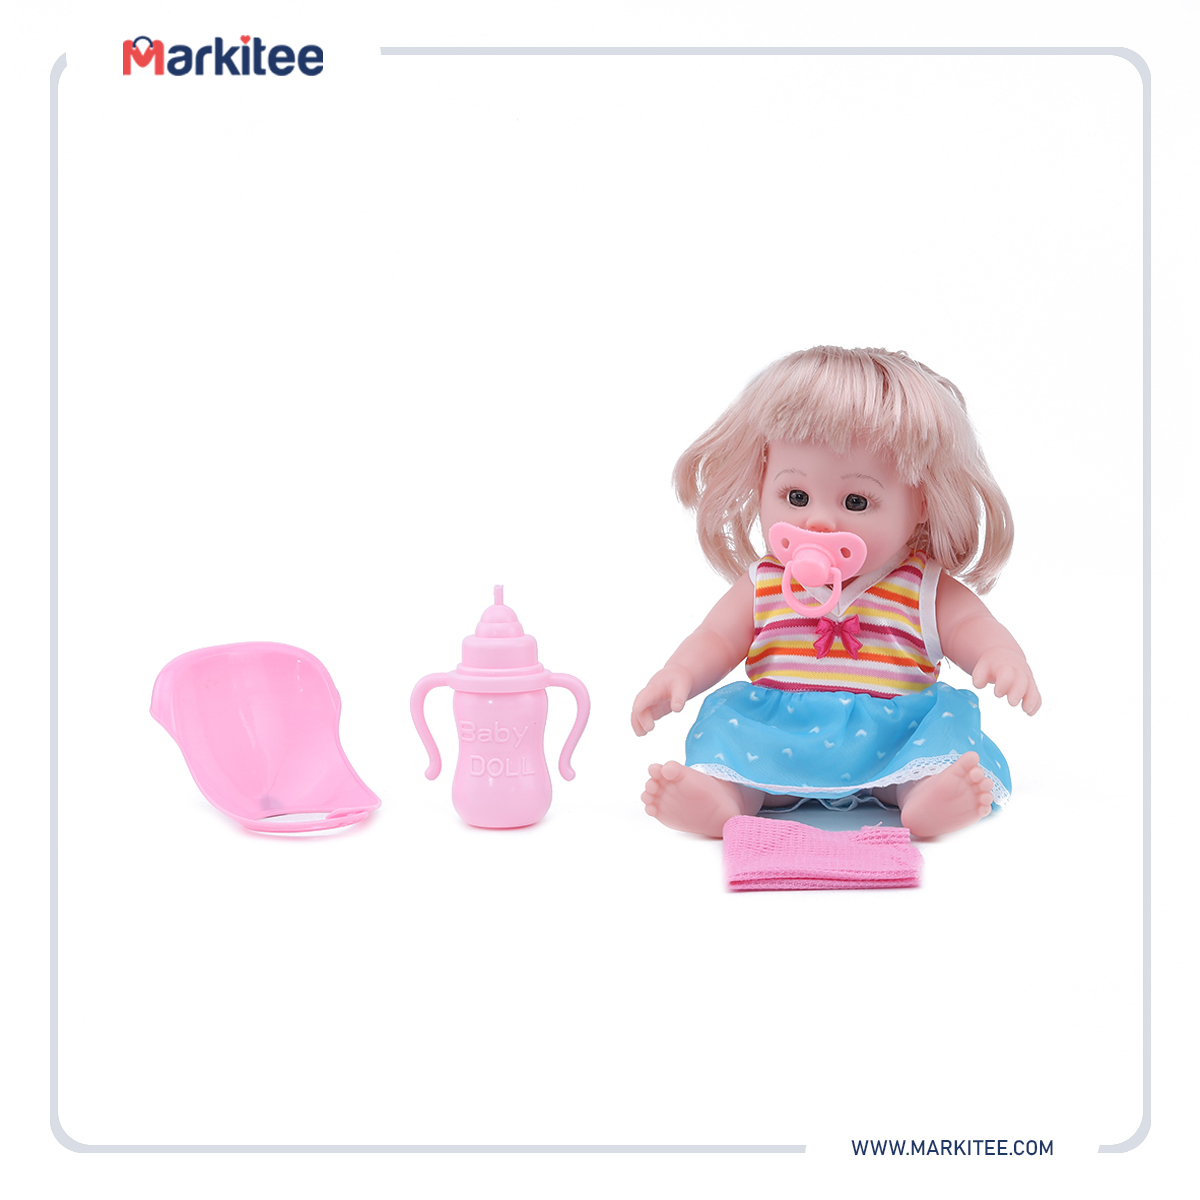 ماركيتي-markitee-20220531112102899_Markitee-Toys-Ty-395-2(3).jpg